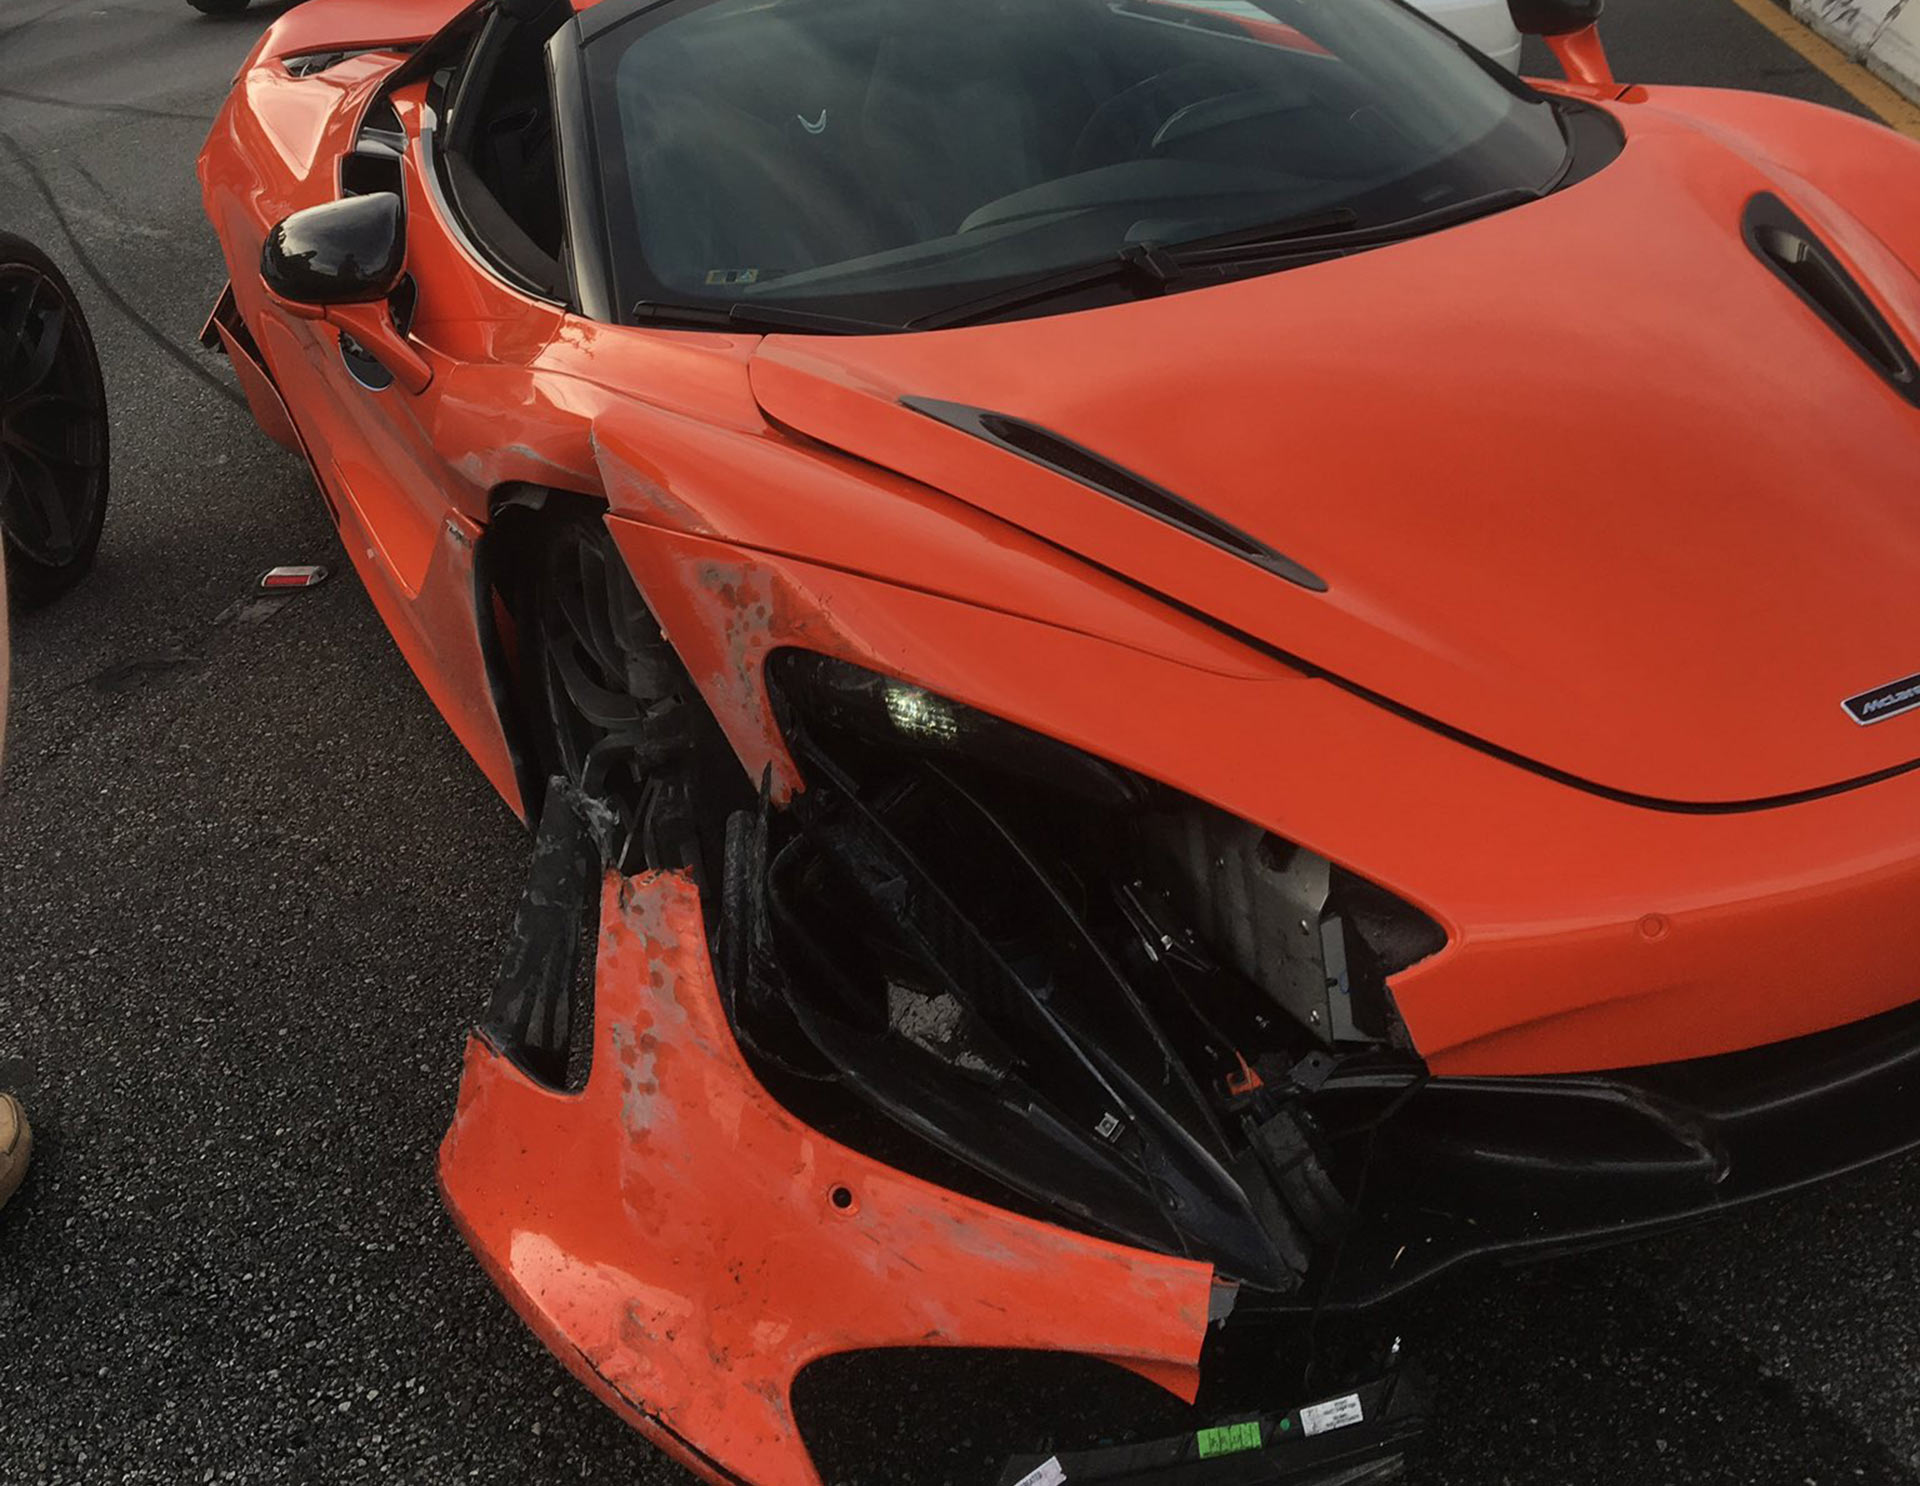 Rented-McLaren-720S-totaled-while-racing-Lamborghini-Huracan-in-California